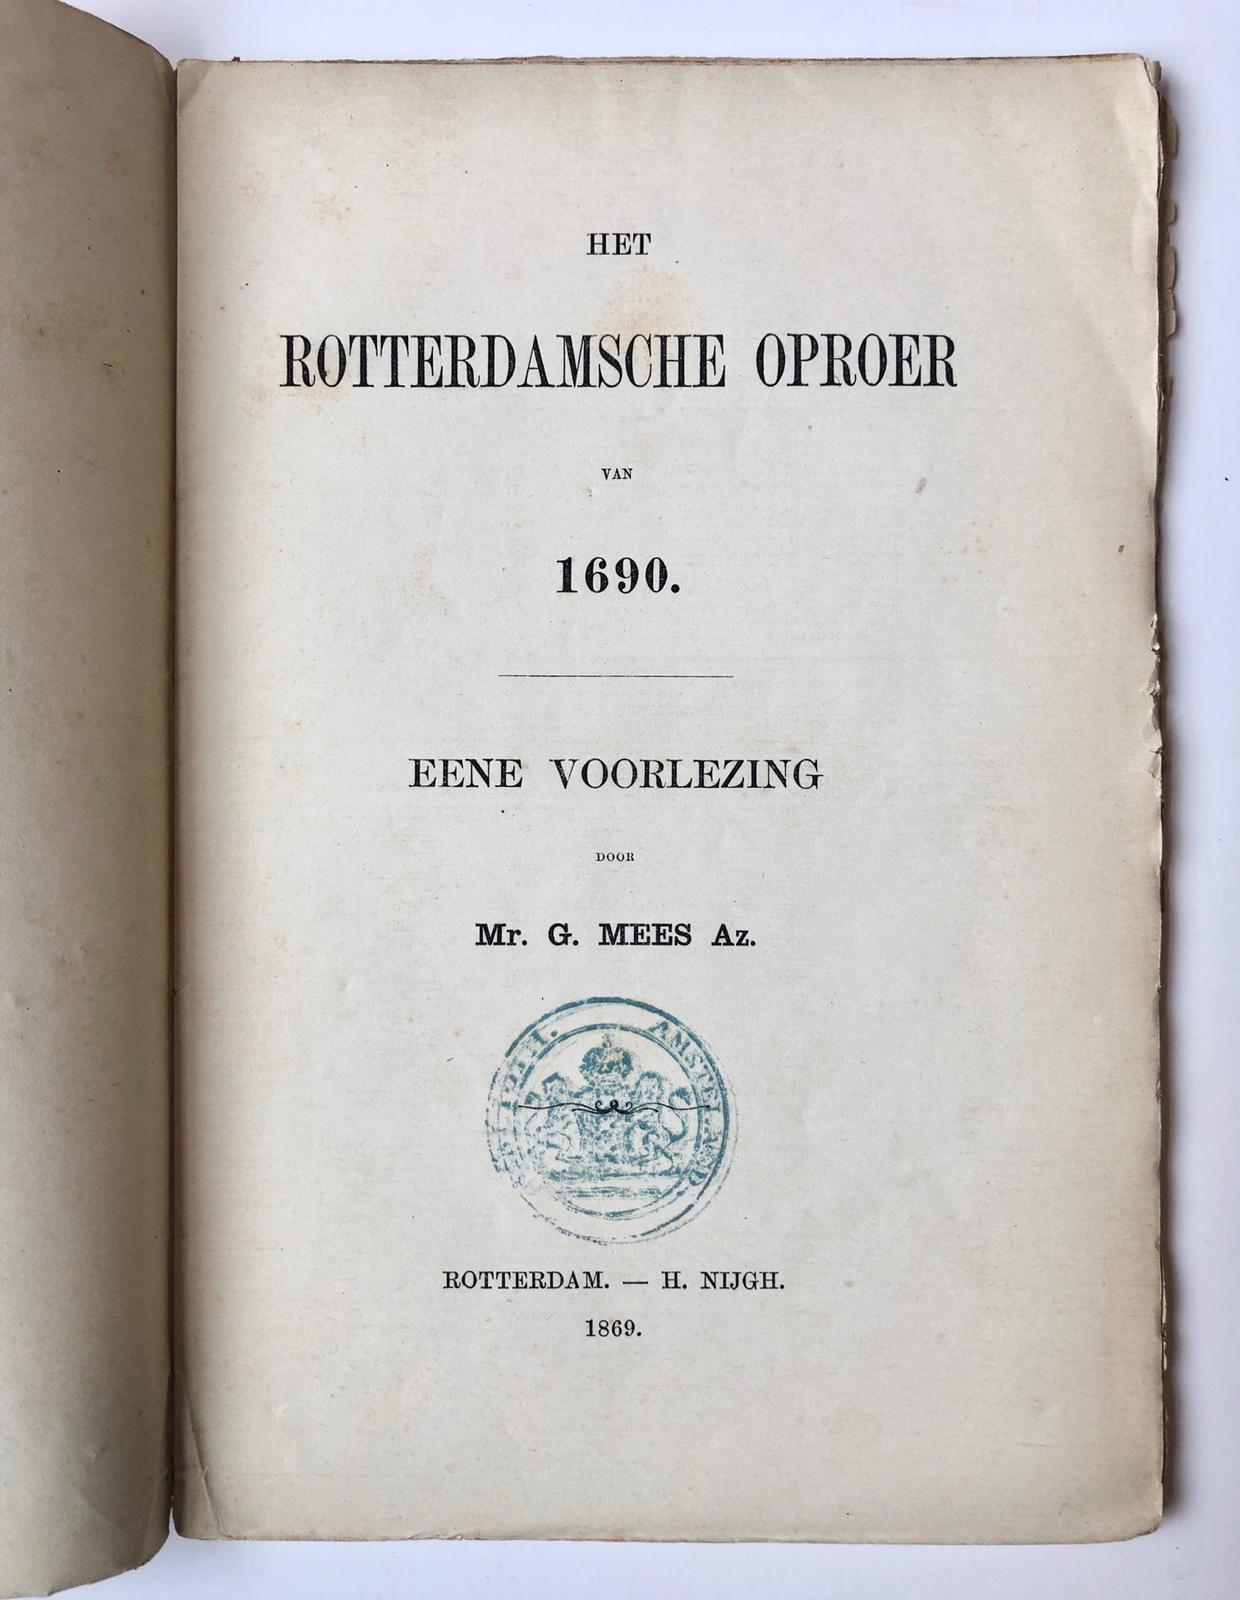 [Rotterdam] Het Rotterdamsche oproer van 1690. Eene voorlezing van Mr. G. Mees Az. H. Nijgh, Rotterdam, 1869, 61 pp.